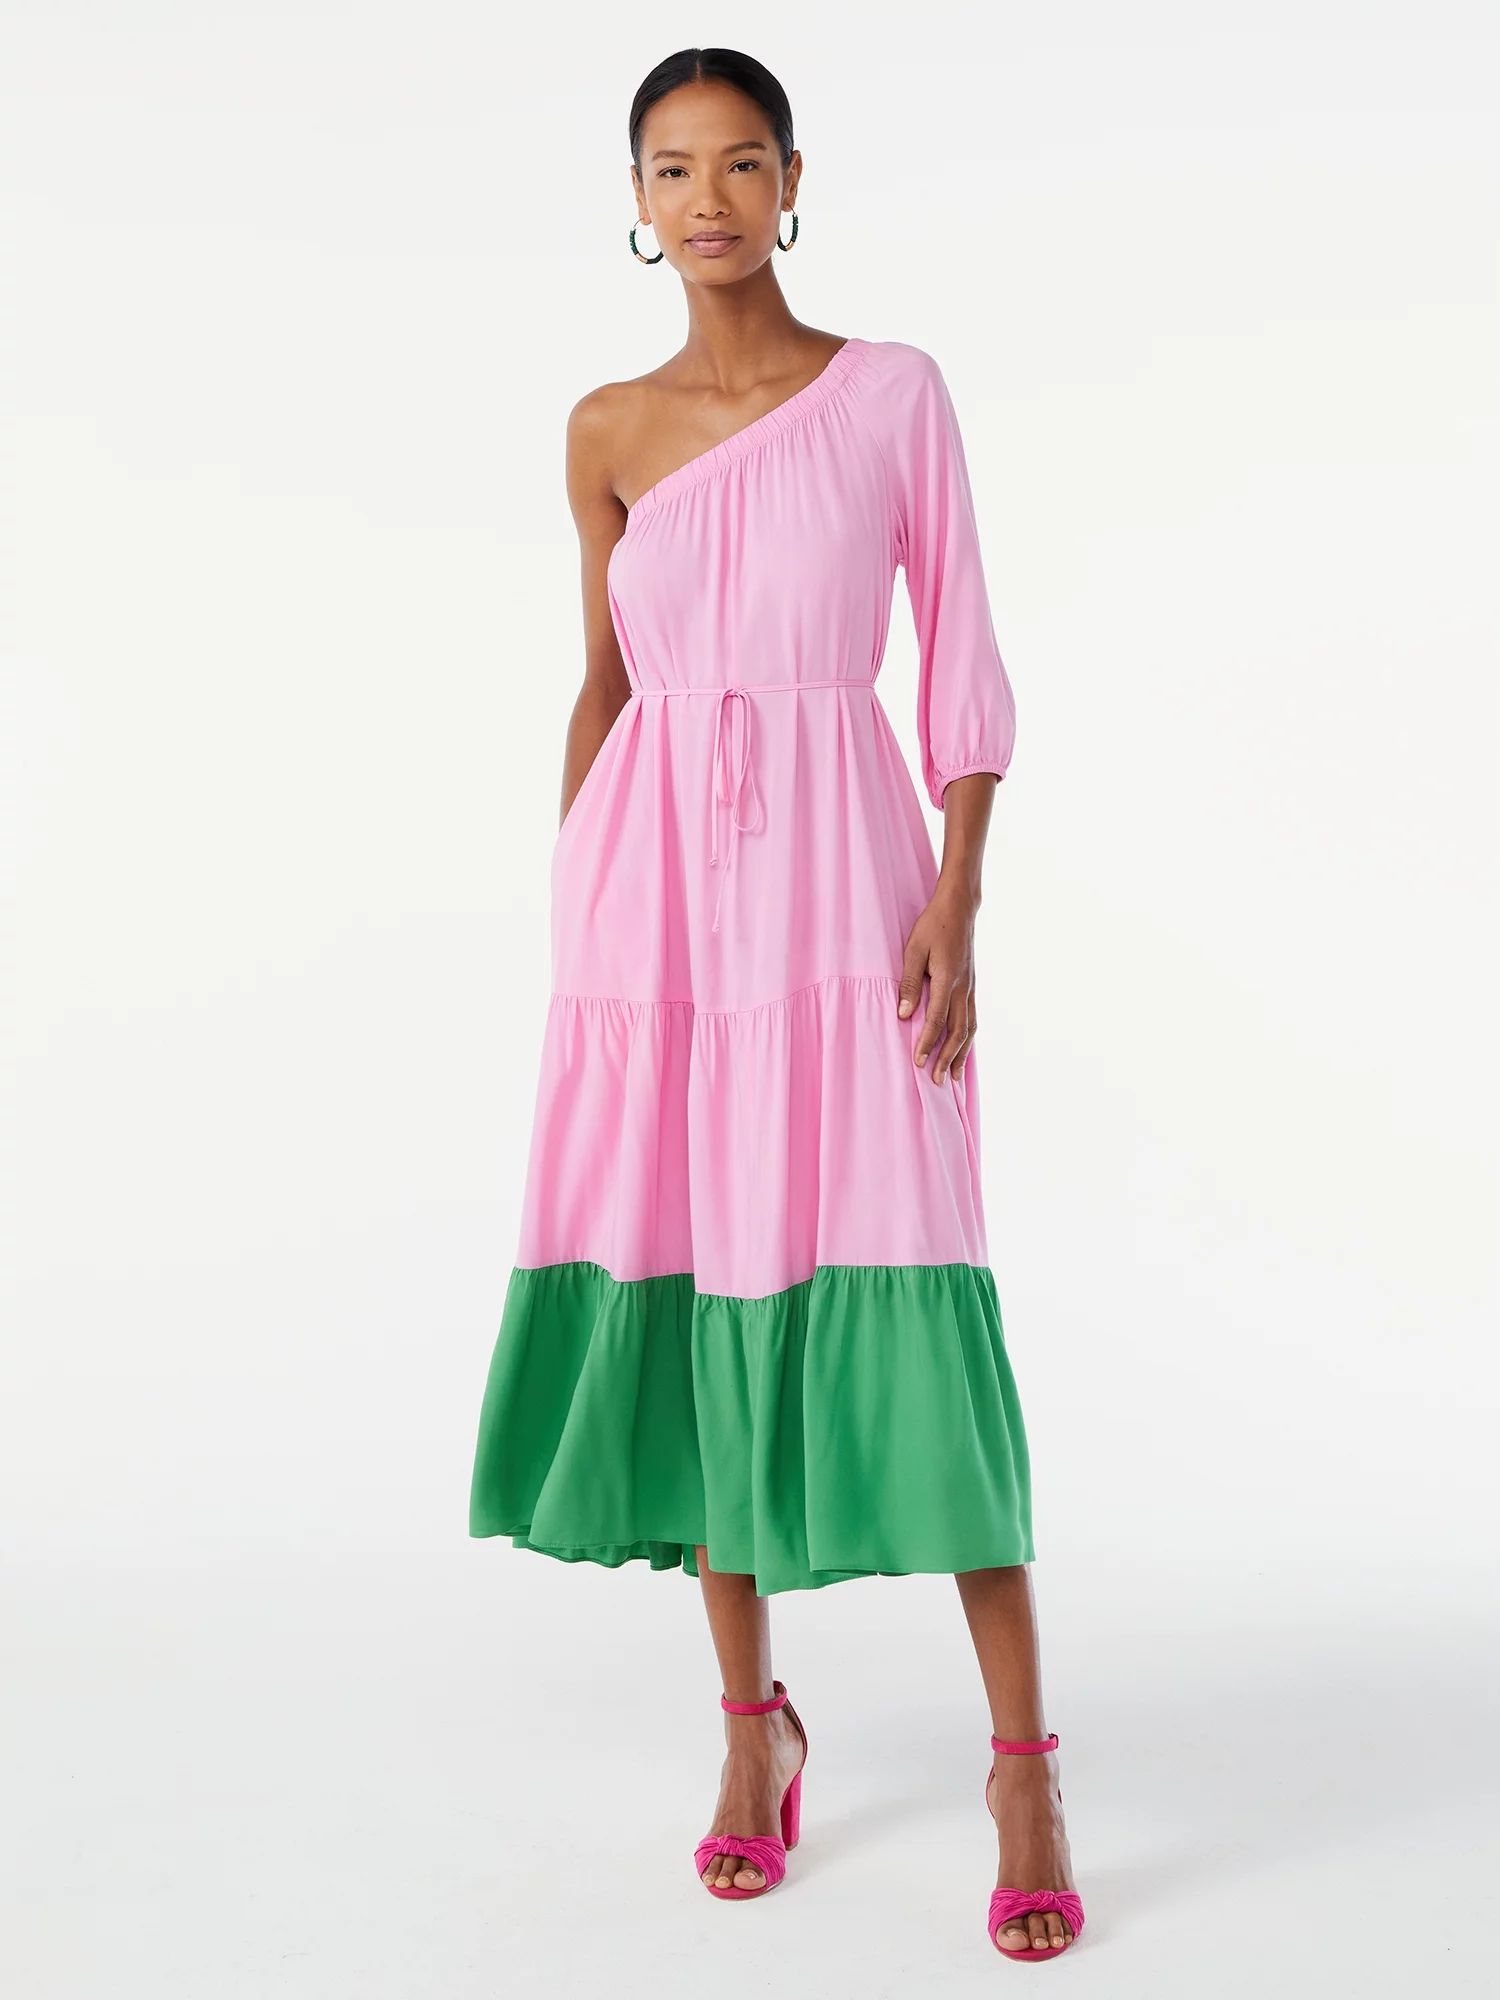 Scoop Women's One Shoulder Color Block Maxi Dress with Tie Front | Walmart (US)